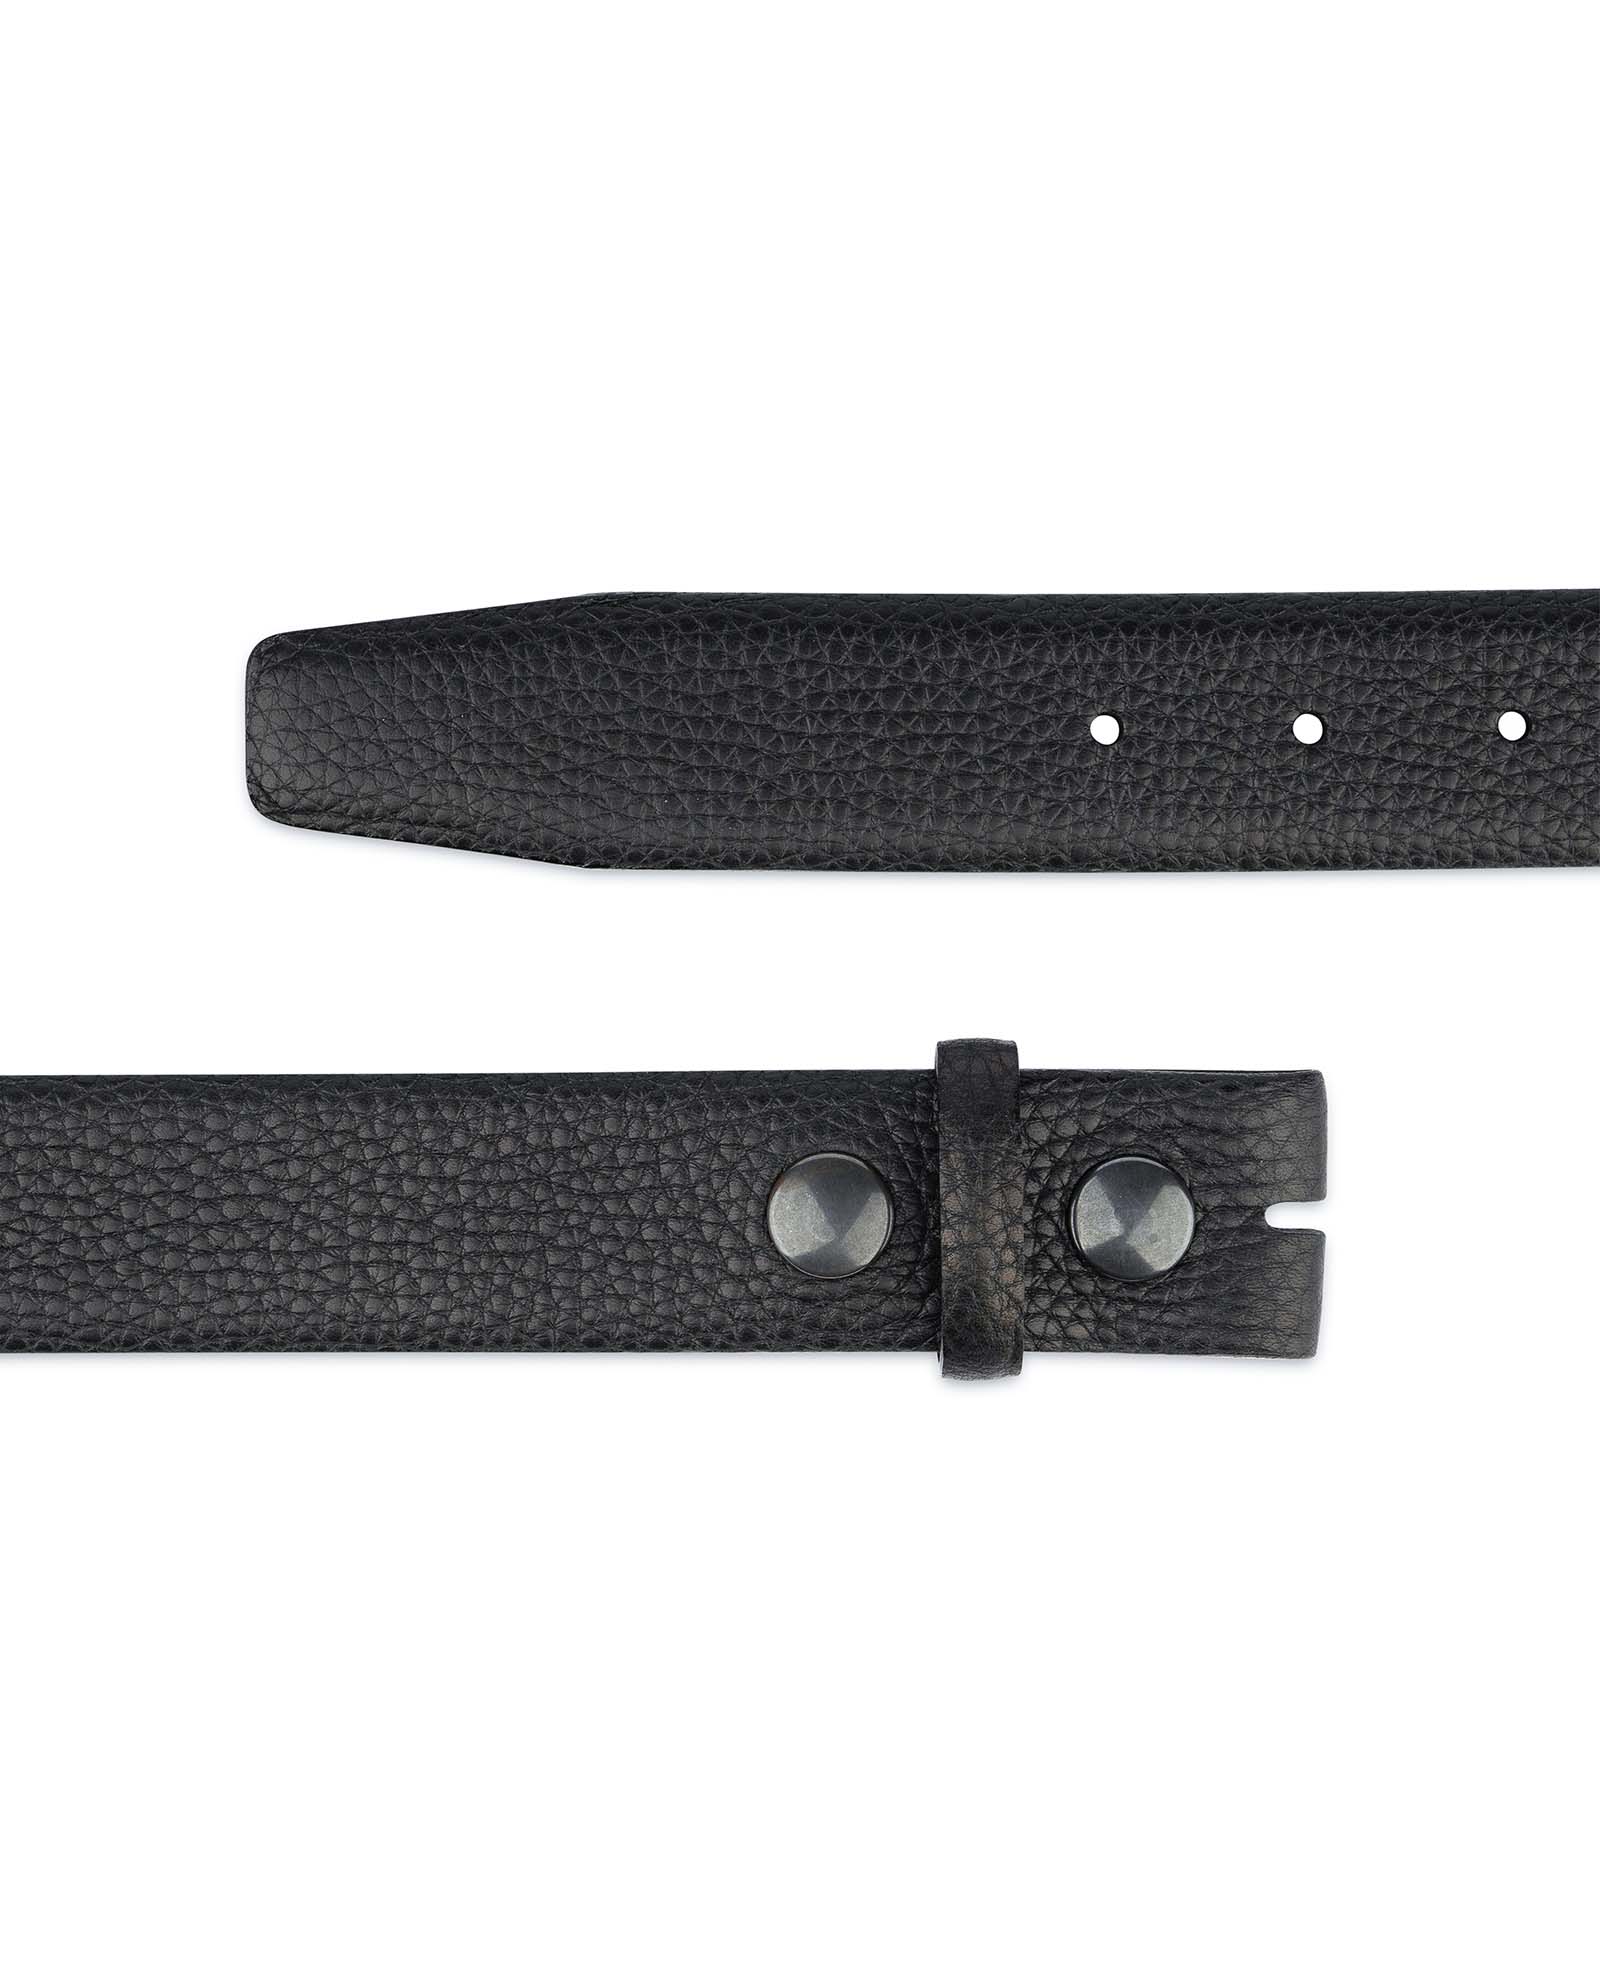 Buy Men's Pebbled Leather Belt | No buckle | LeatherBeltsOnline.com